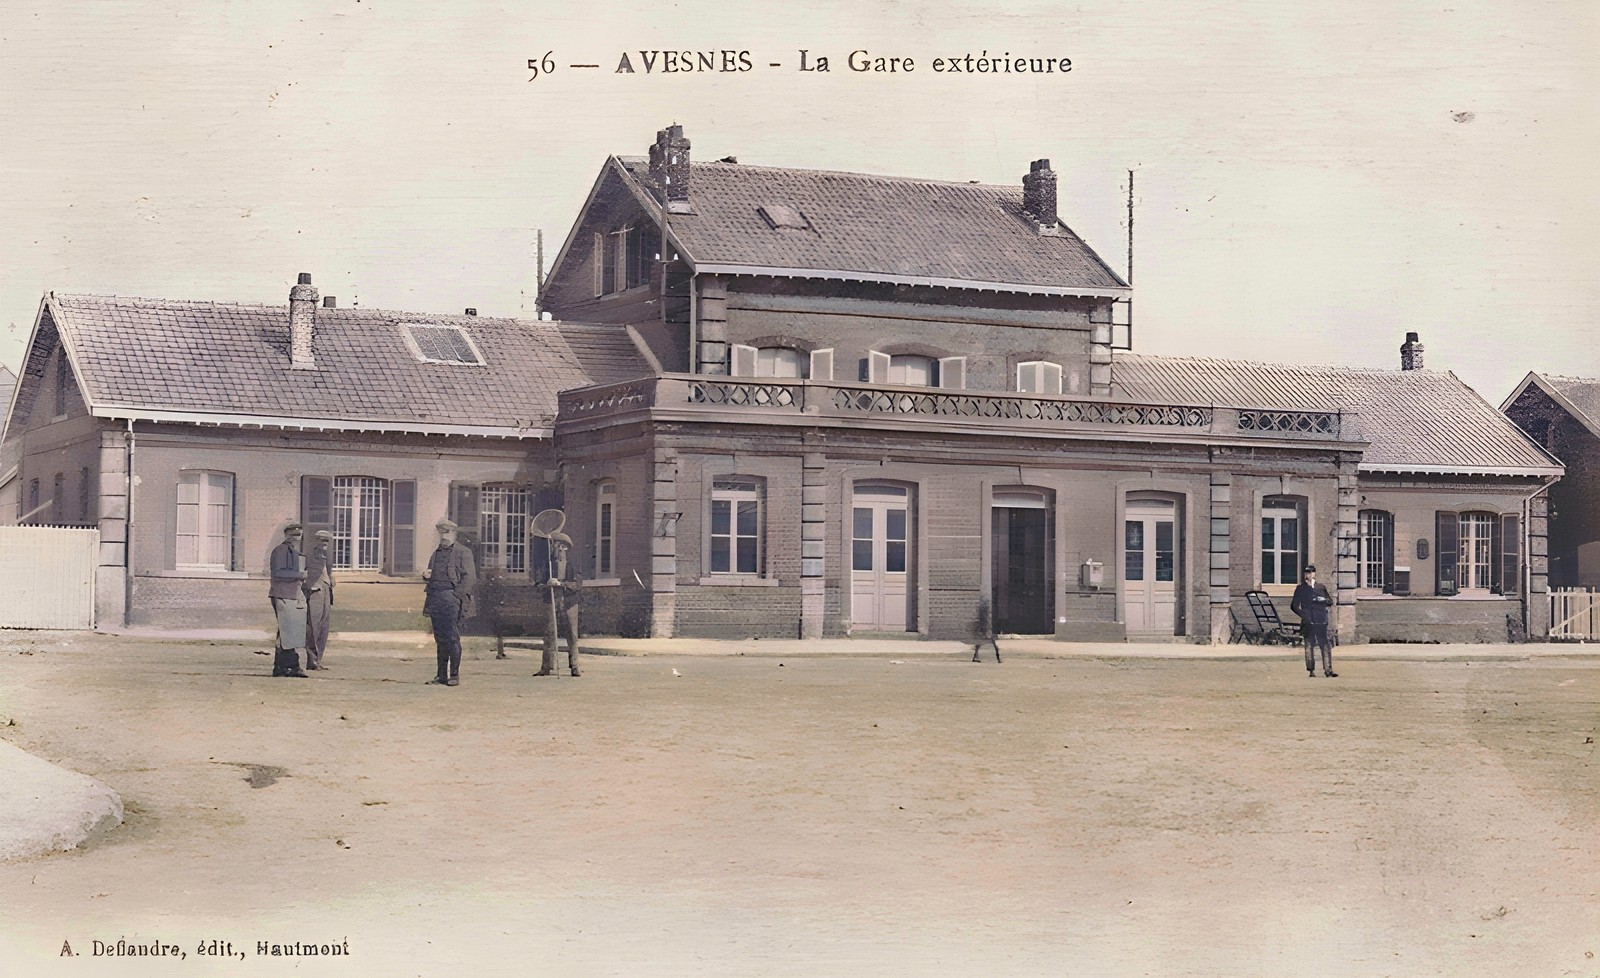 La gare d'Avesnes sur Helpe